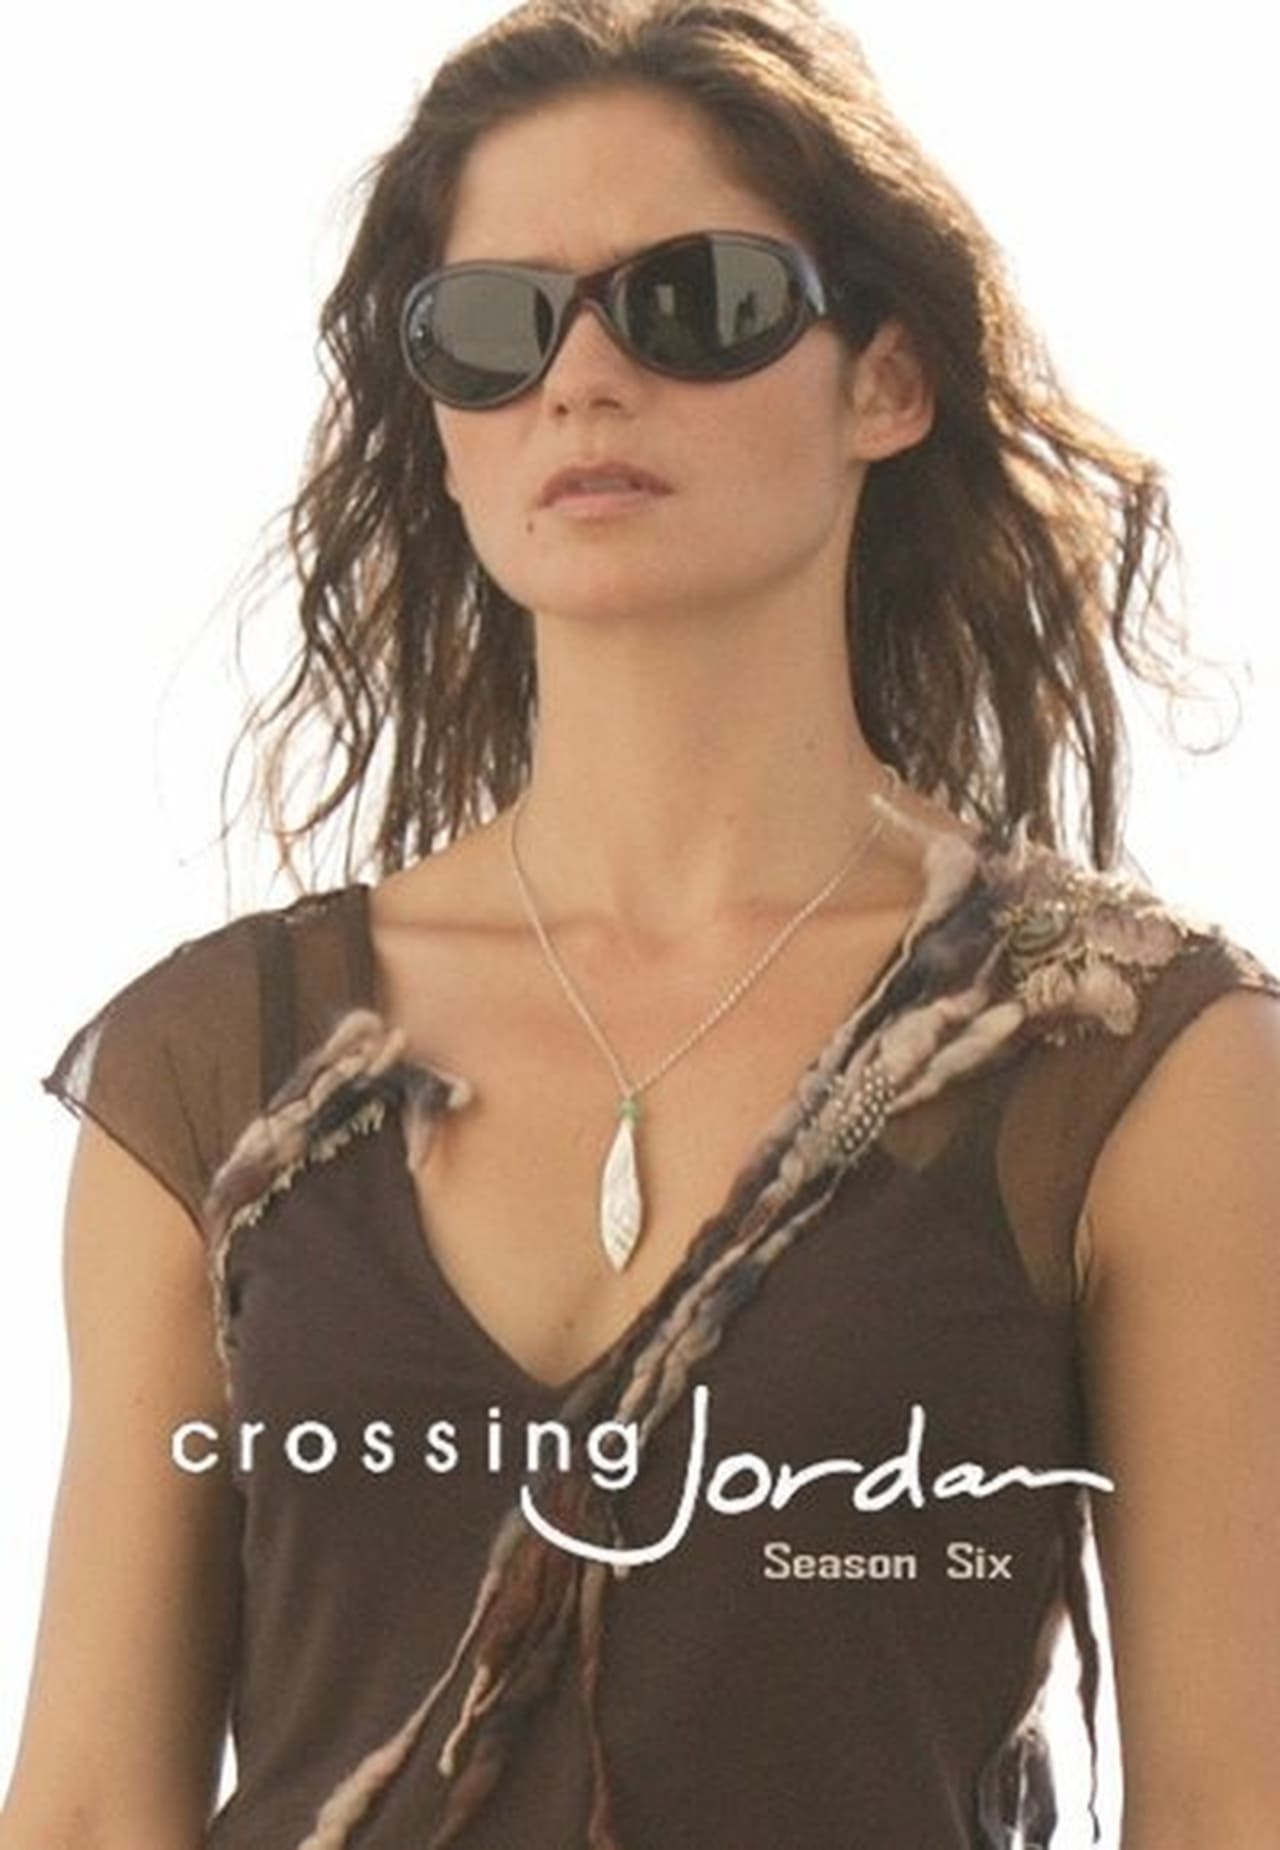 Crossing Jordan Season 6